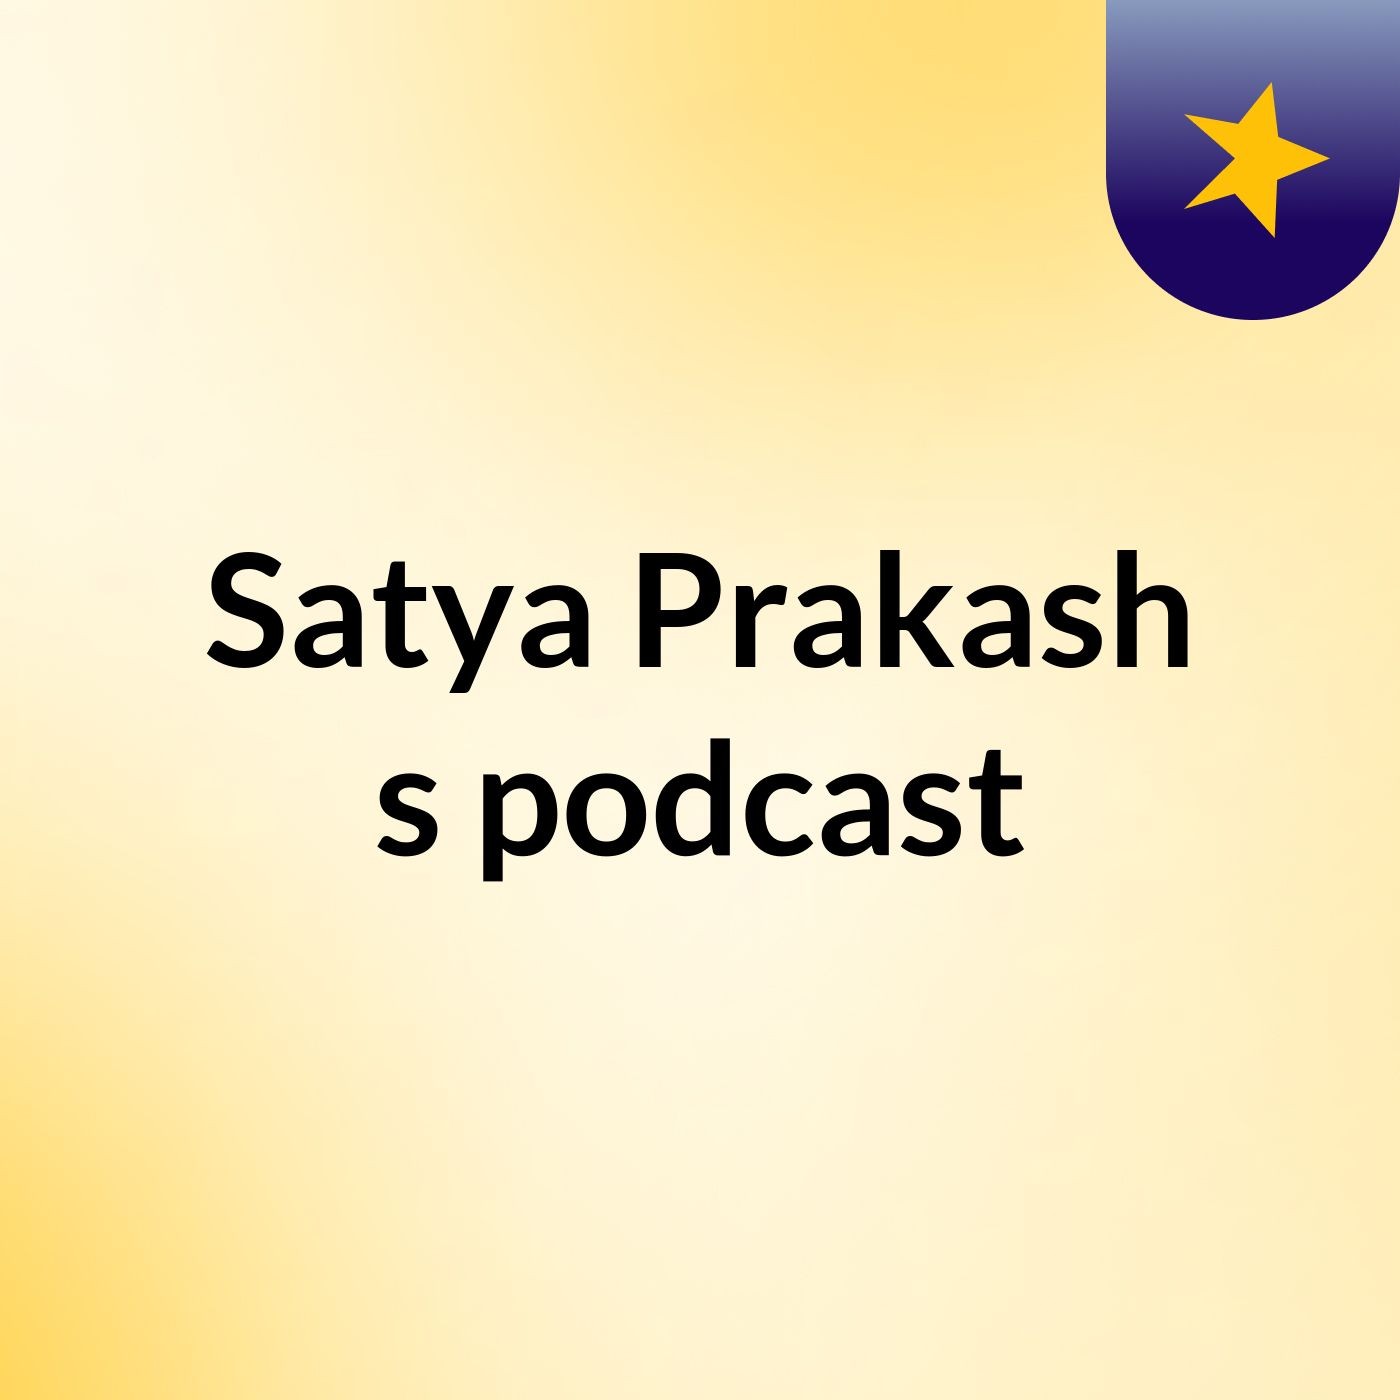 Episode 4 - Satya Prakash's podcast